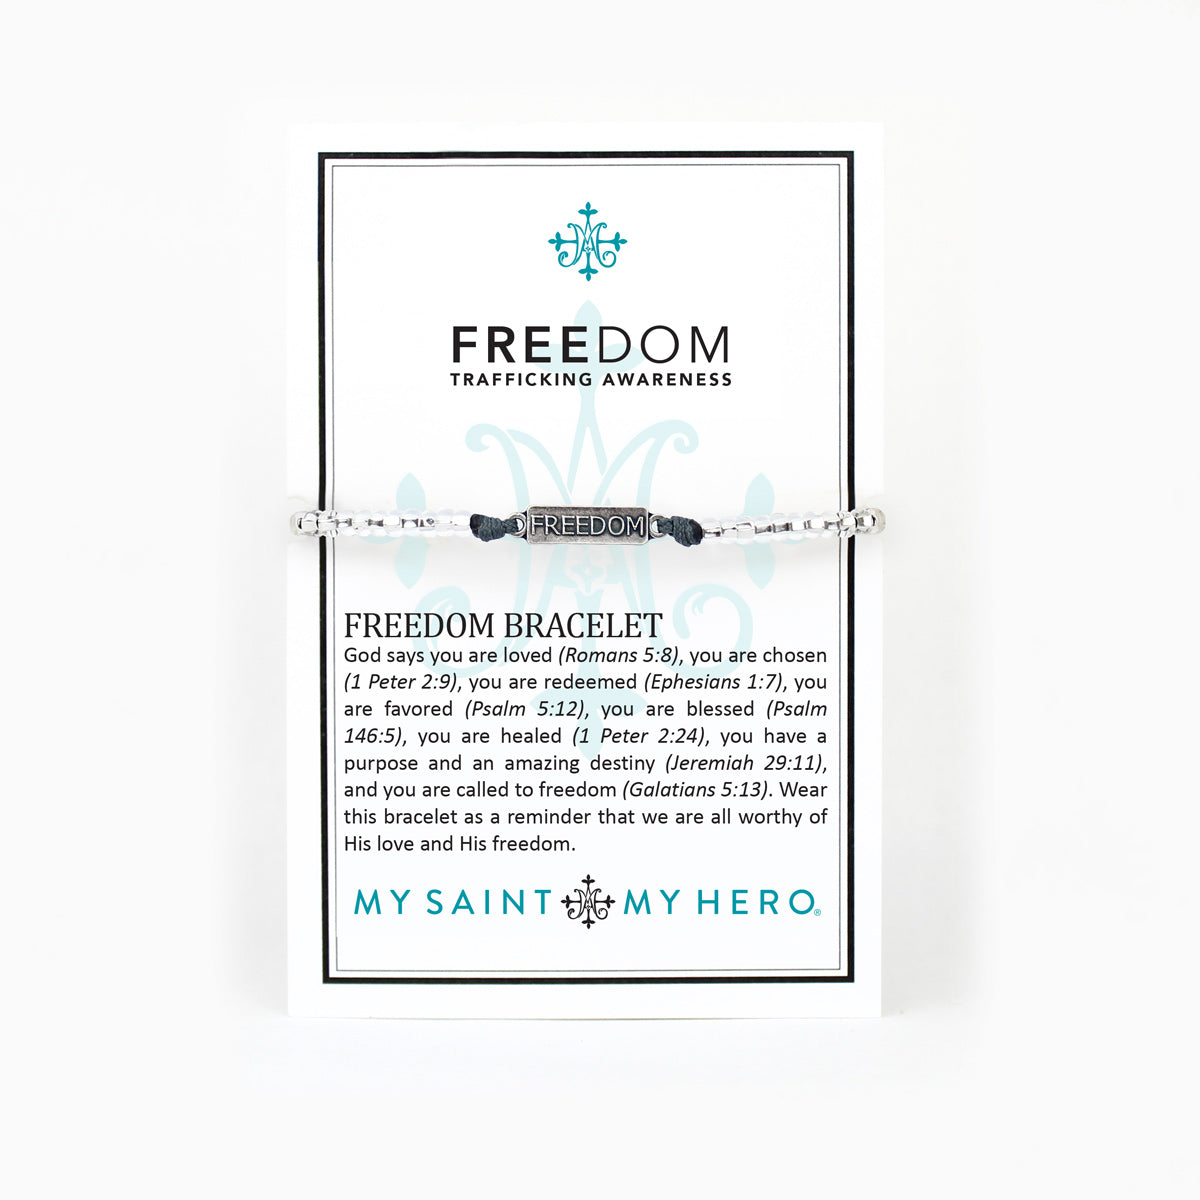 Freedom Human Trafficking Awareness Bracelet